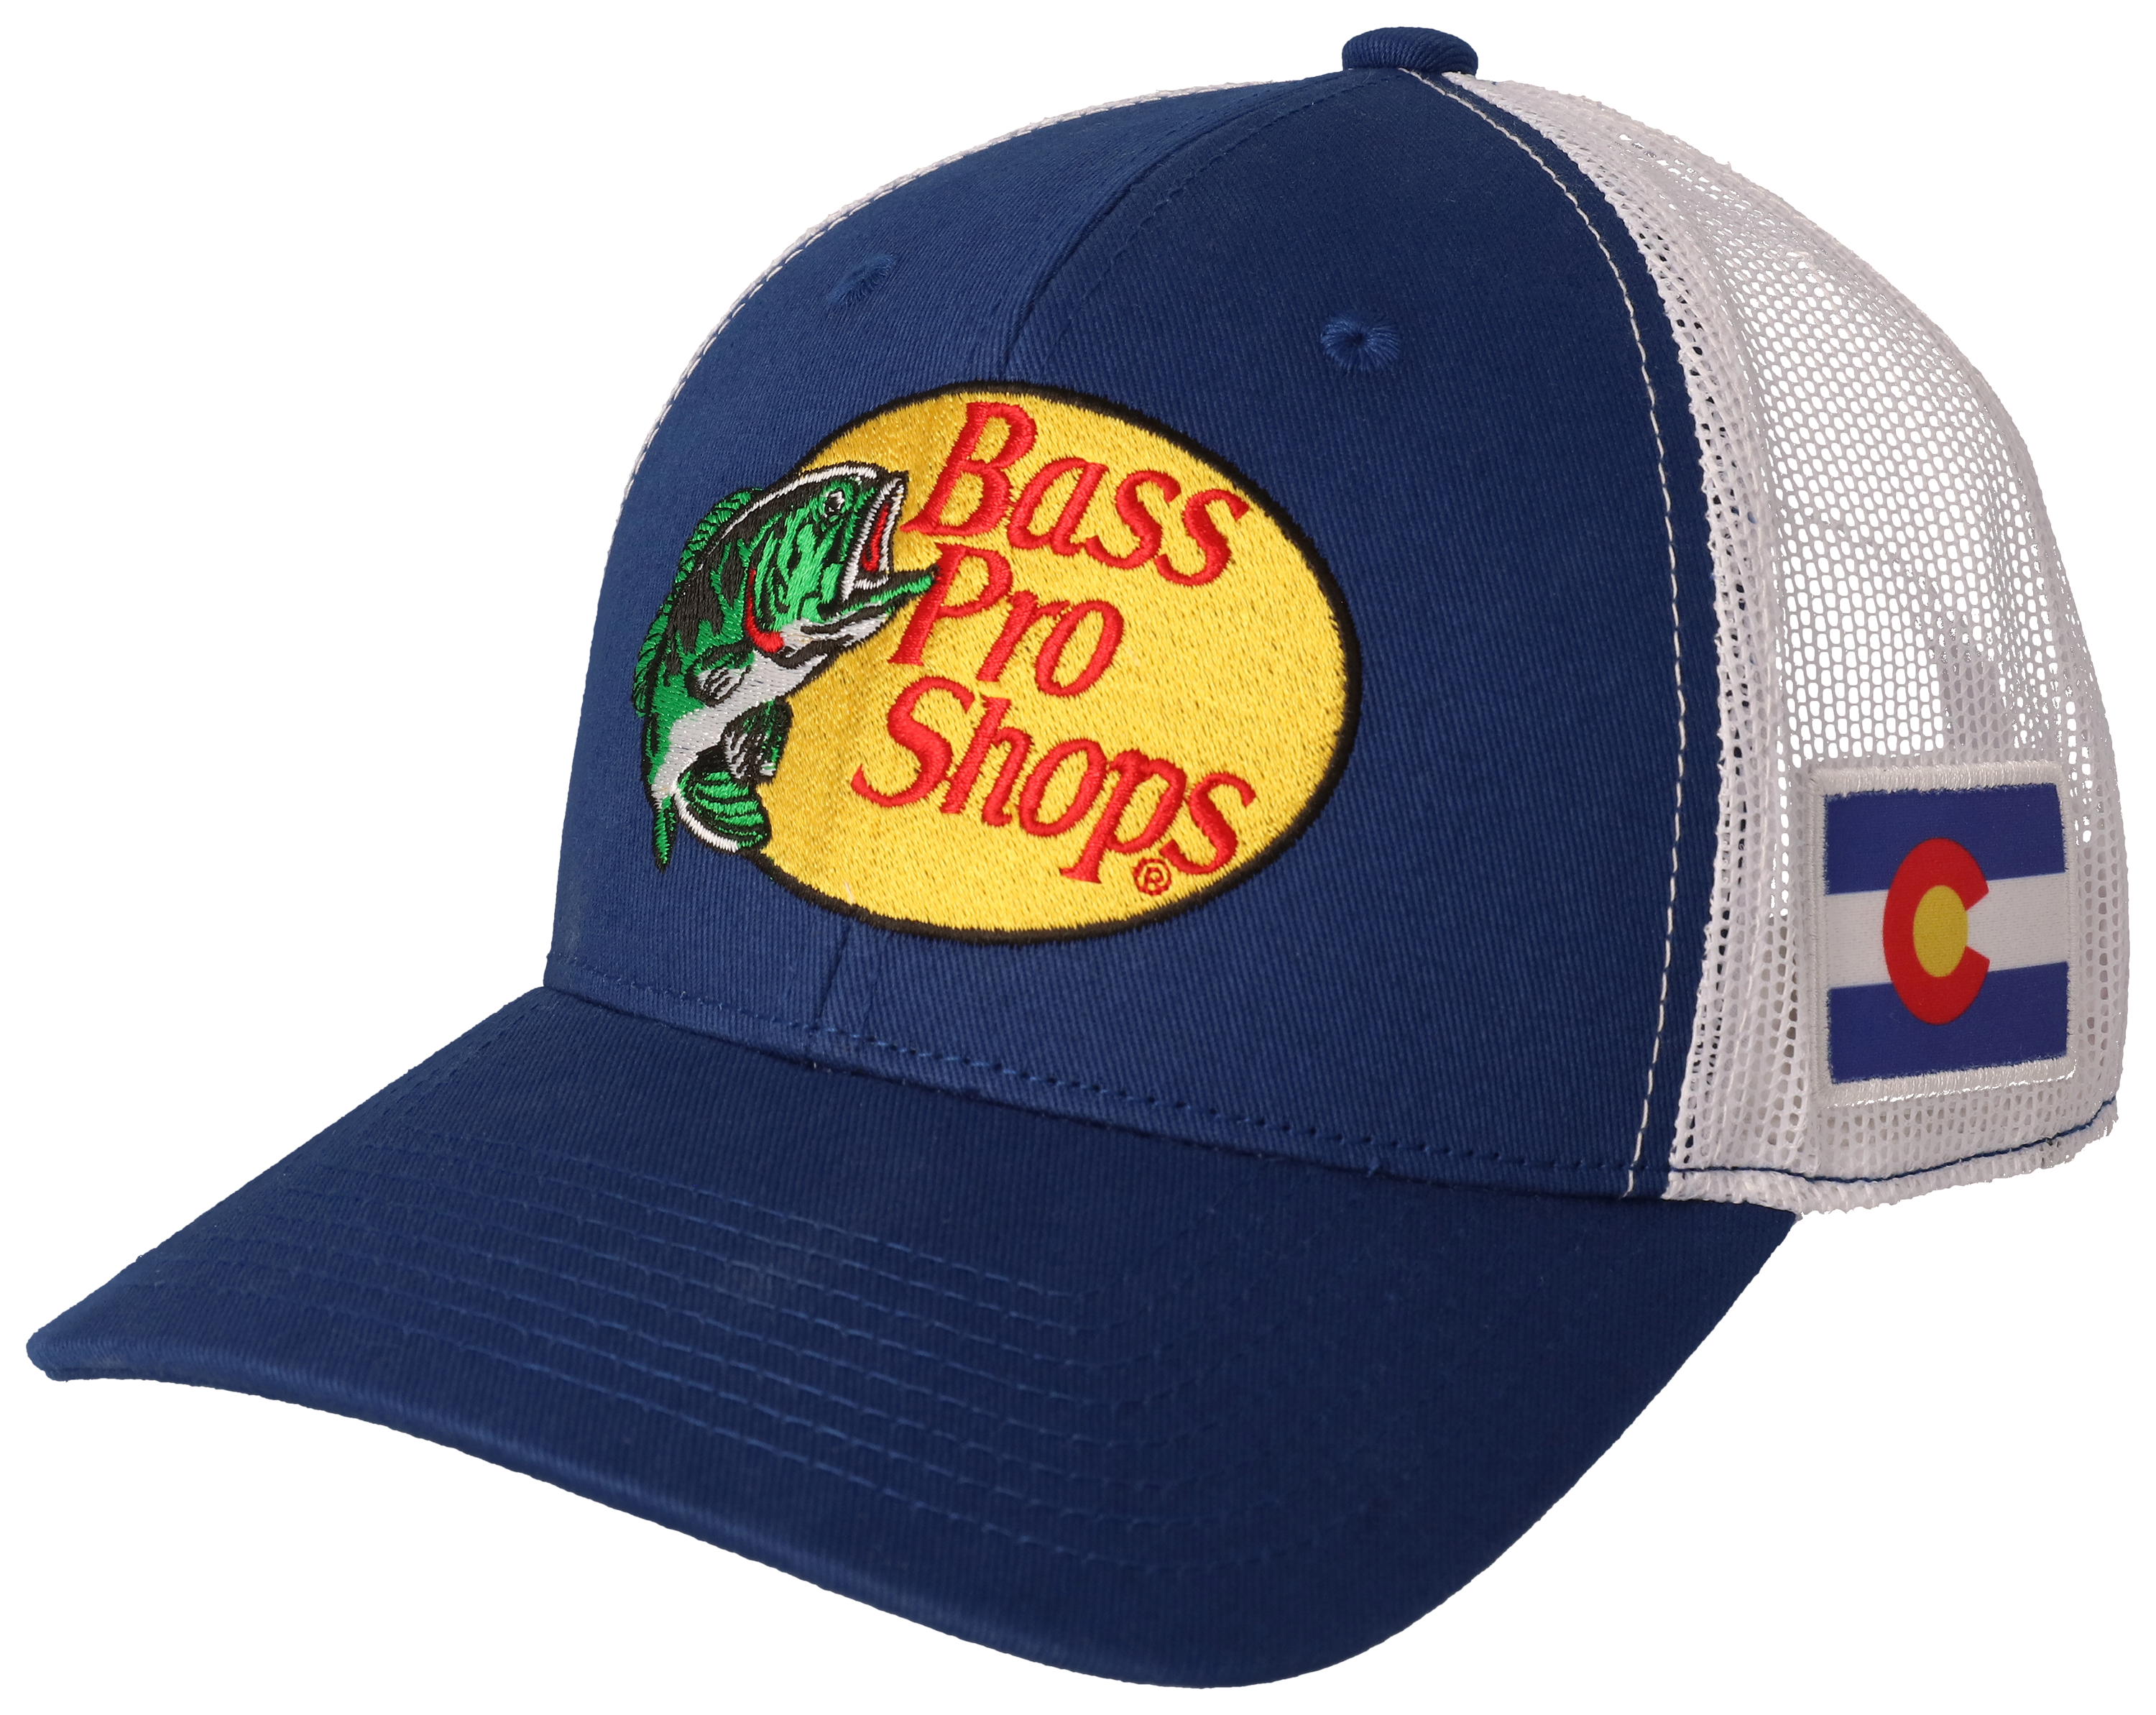 Bass Pro Shops Woodcut Logo Buttery Twill Cap - Navy